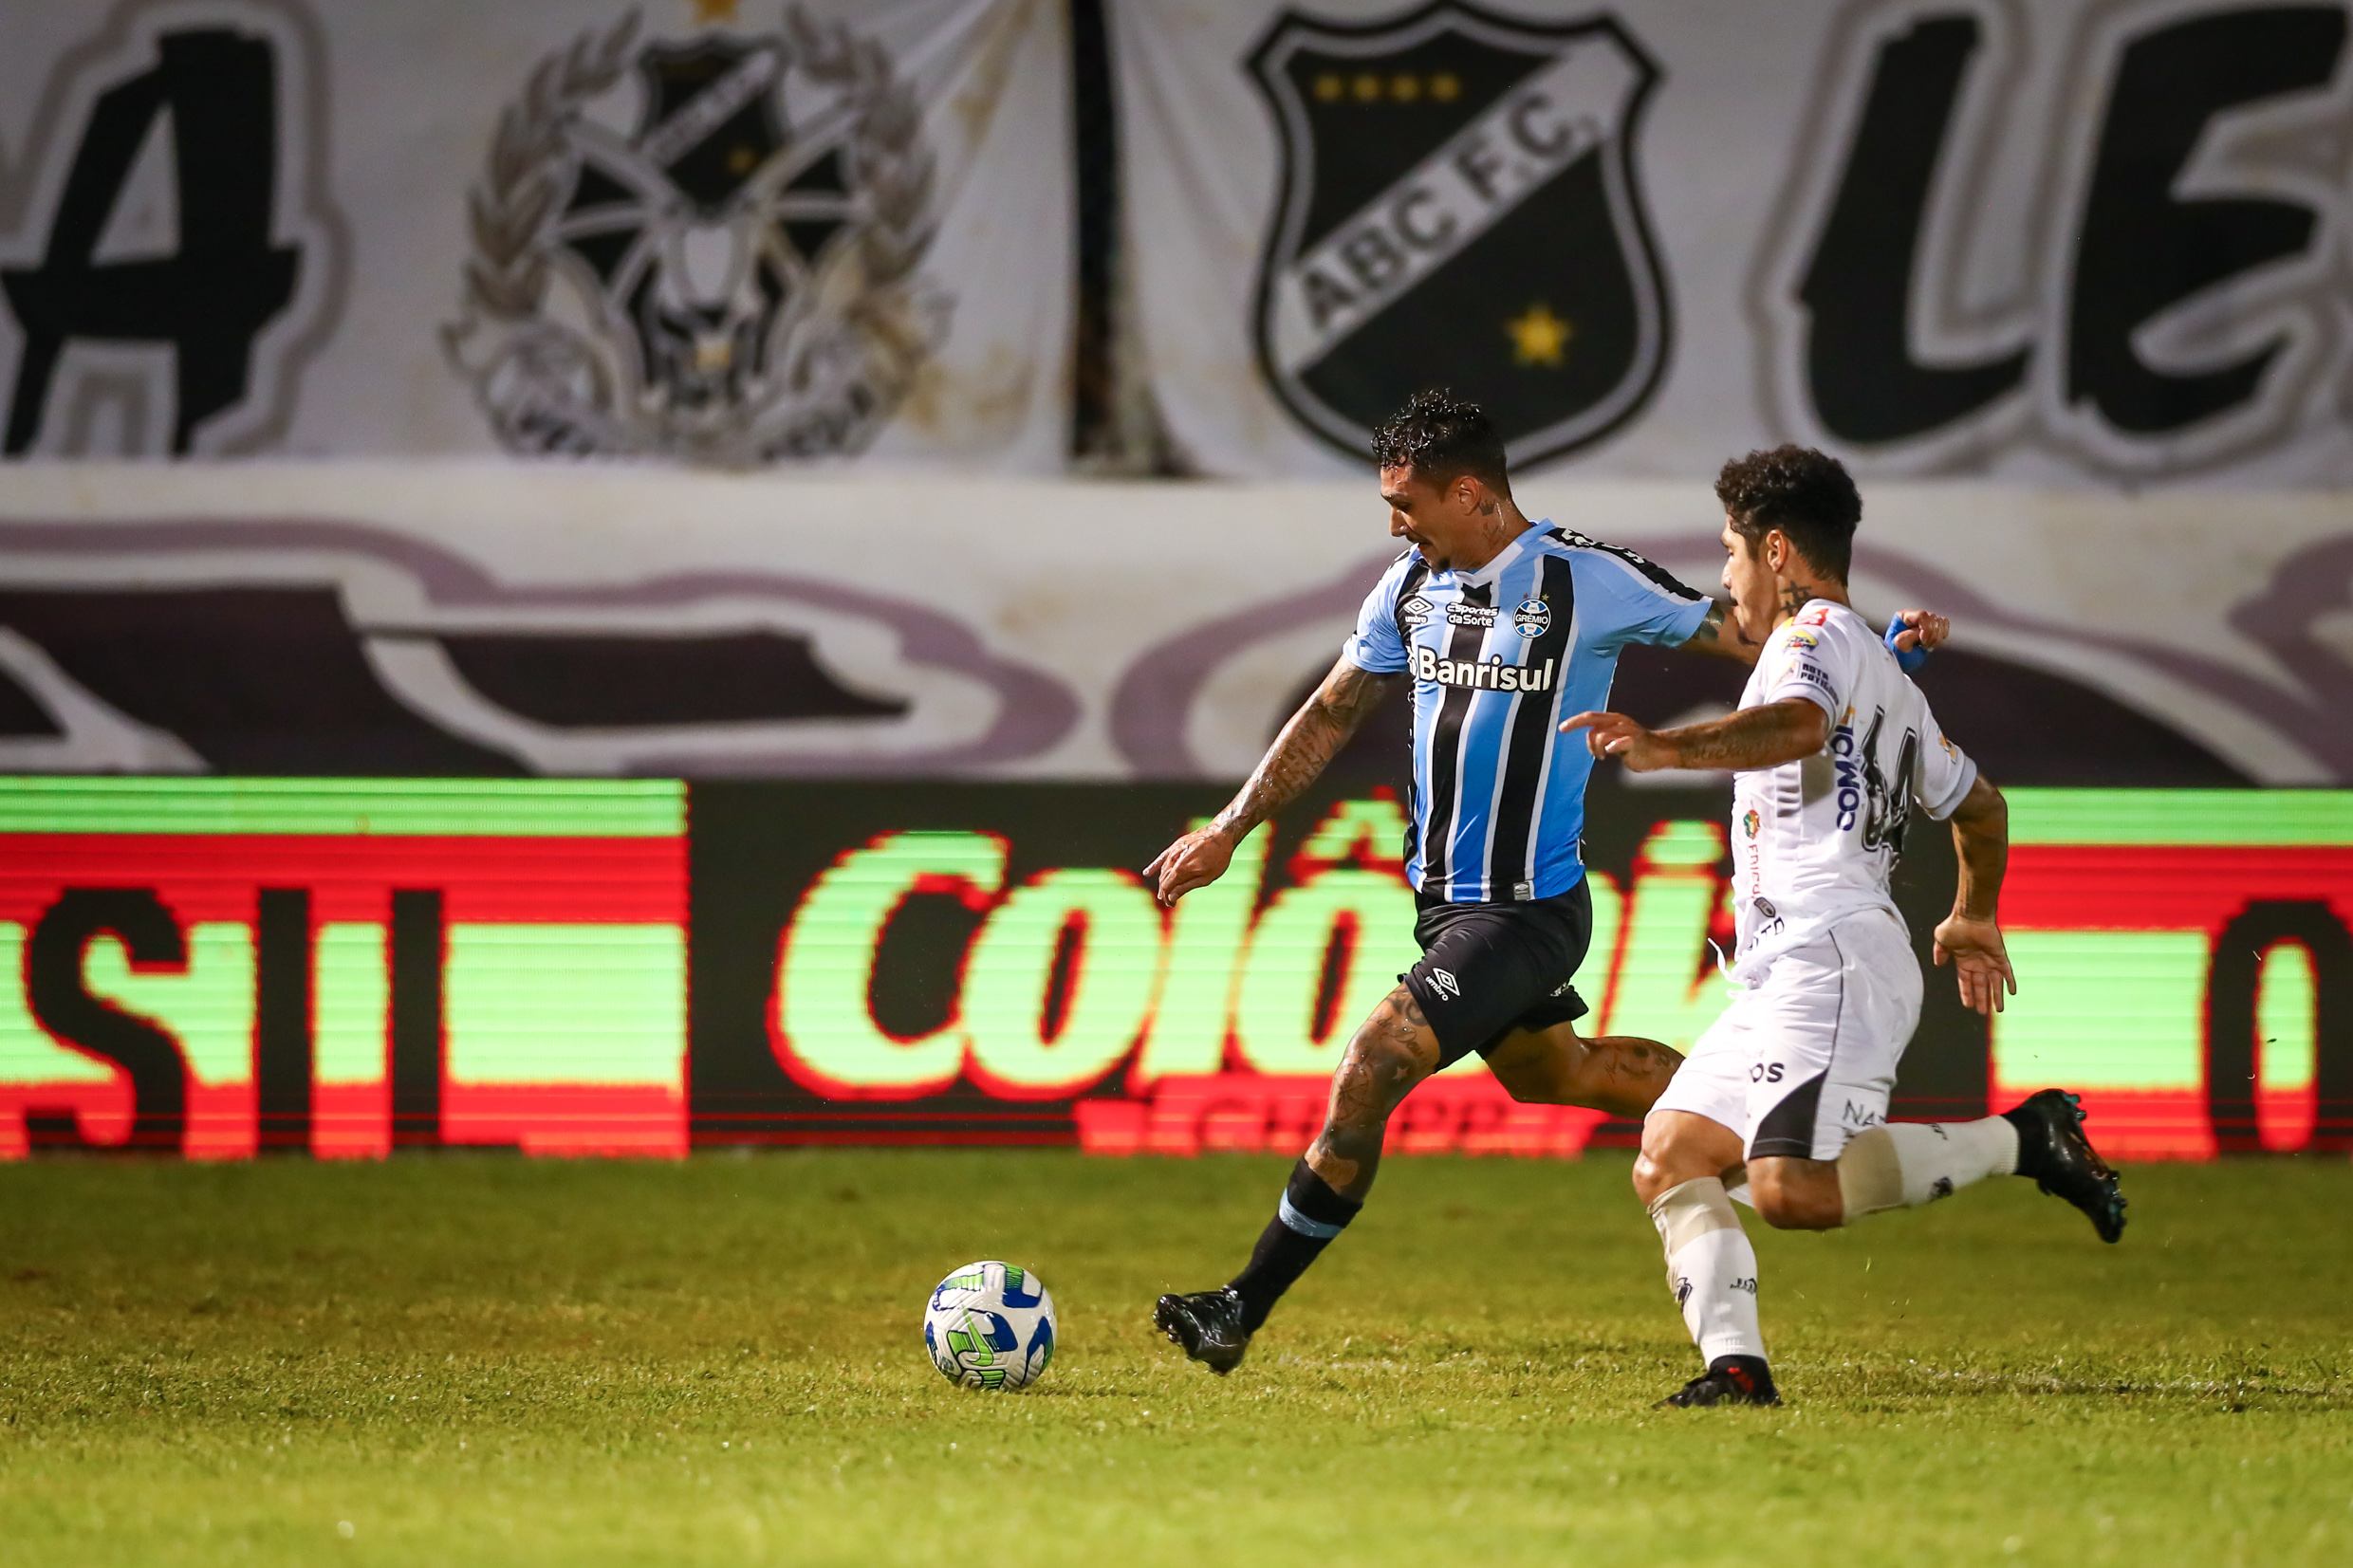 Grêmio vs ABC: Clash of Goliath and David